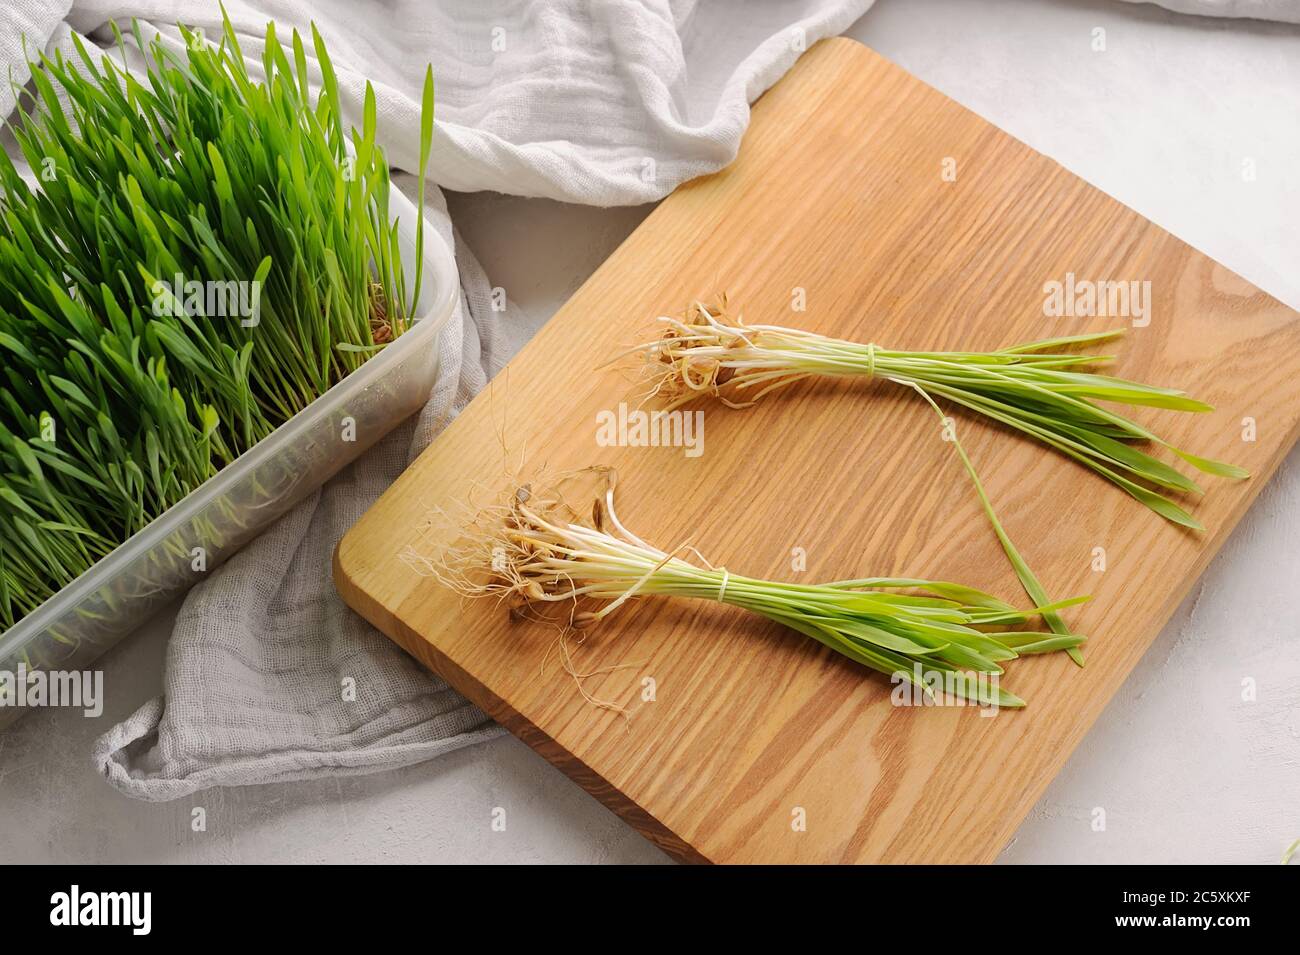 Erba di grano verde pianta sul tagliere e nel pot.germogliato di grano. Ingrediente sano e disintossicante. Foto Stock